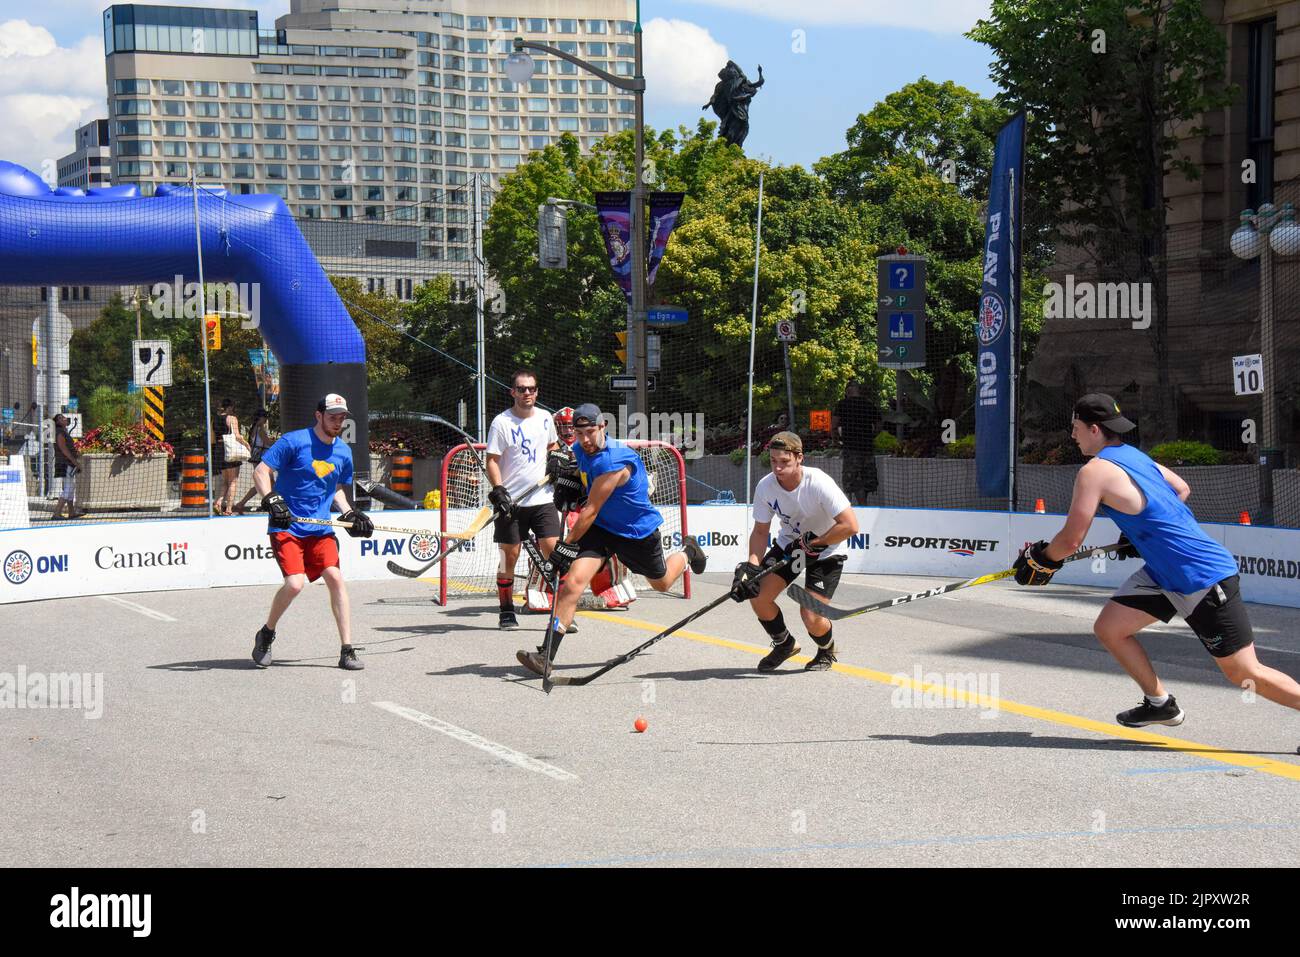 Ottawa, Kanada - 20. August 2022: Spielen Sie Weiter! Kanadas größtes Straßenhockey-Festival kehrt nach Ottawa zurück, und dieses Mal findet es in der Wellington Street vor dem Parliament Hill statt. Stockfoto